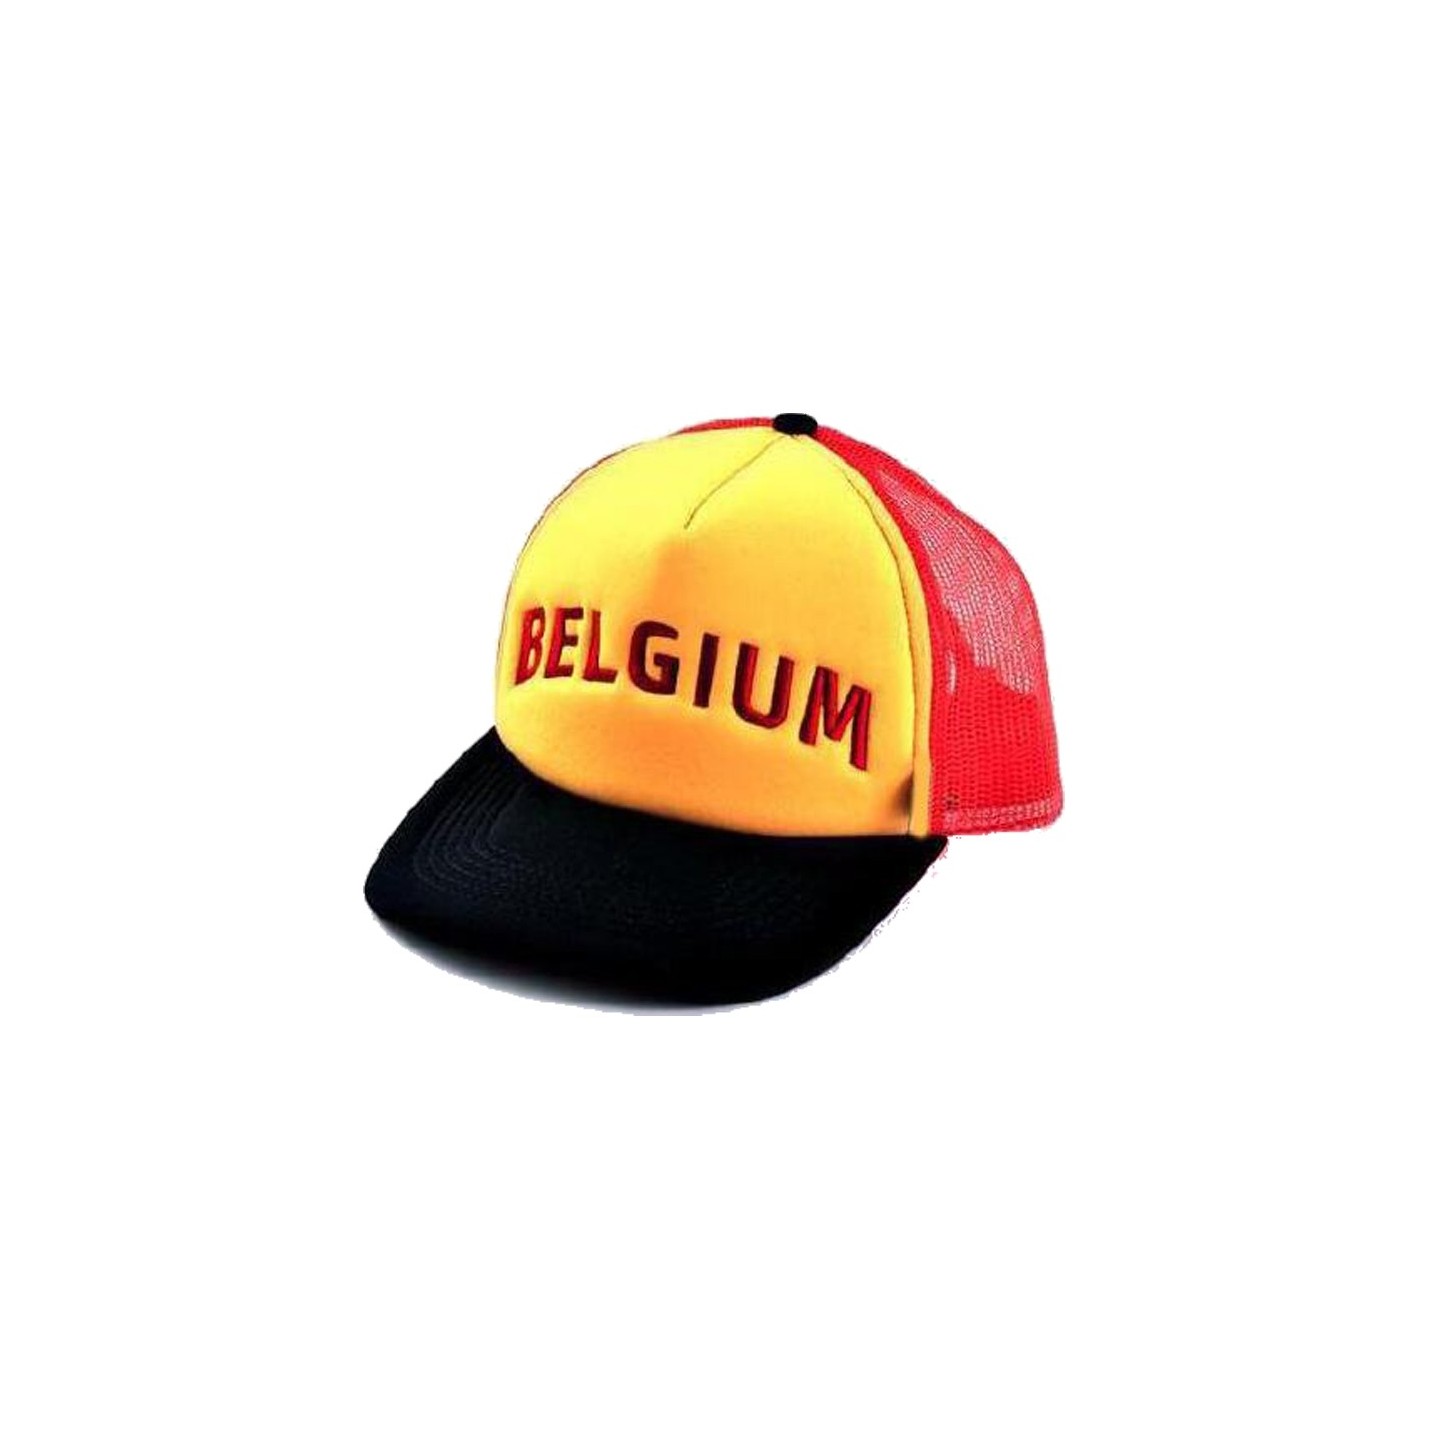 belgie pet supporters fanartikelen belgium accessoires